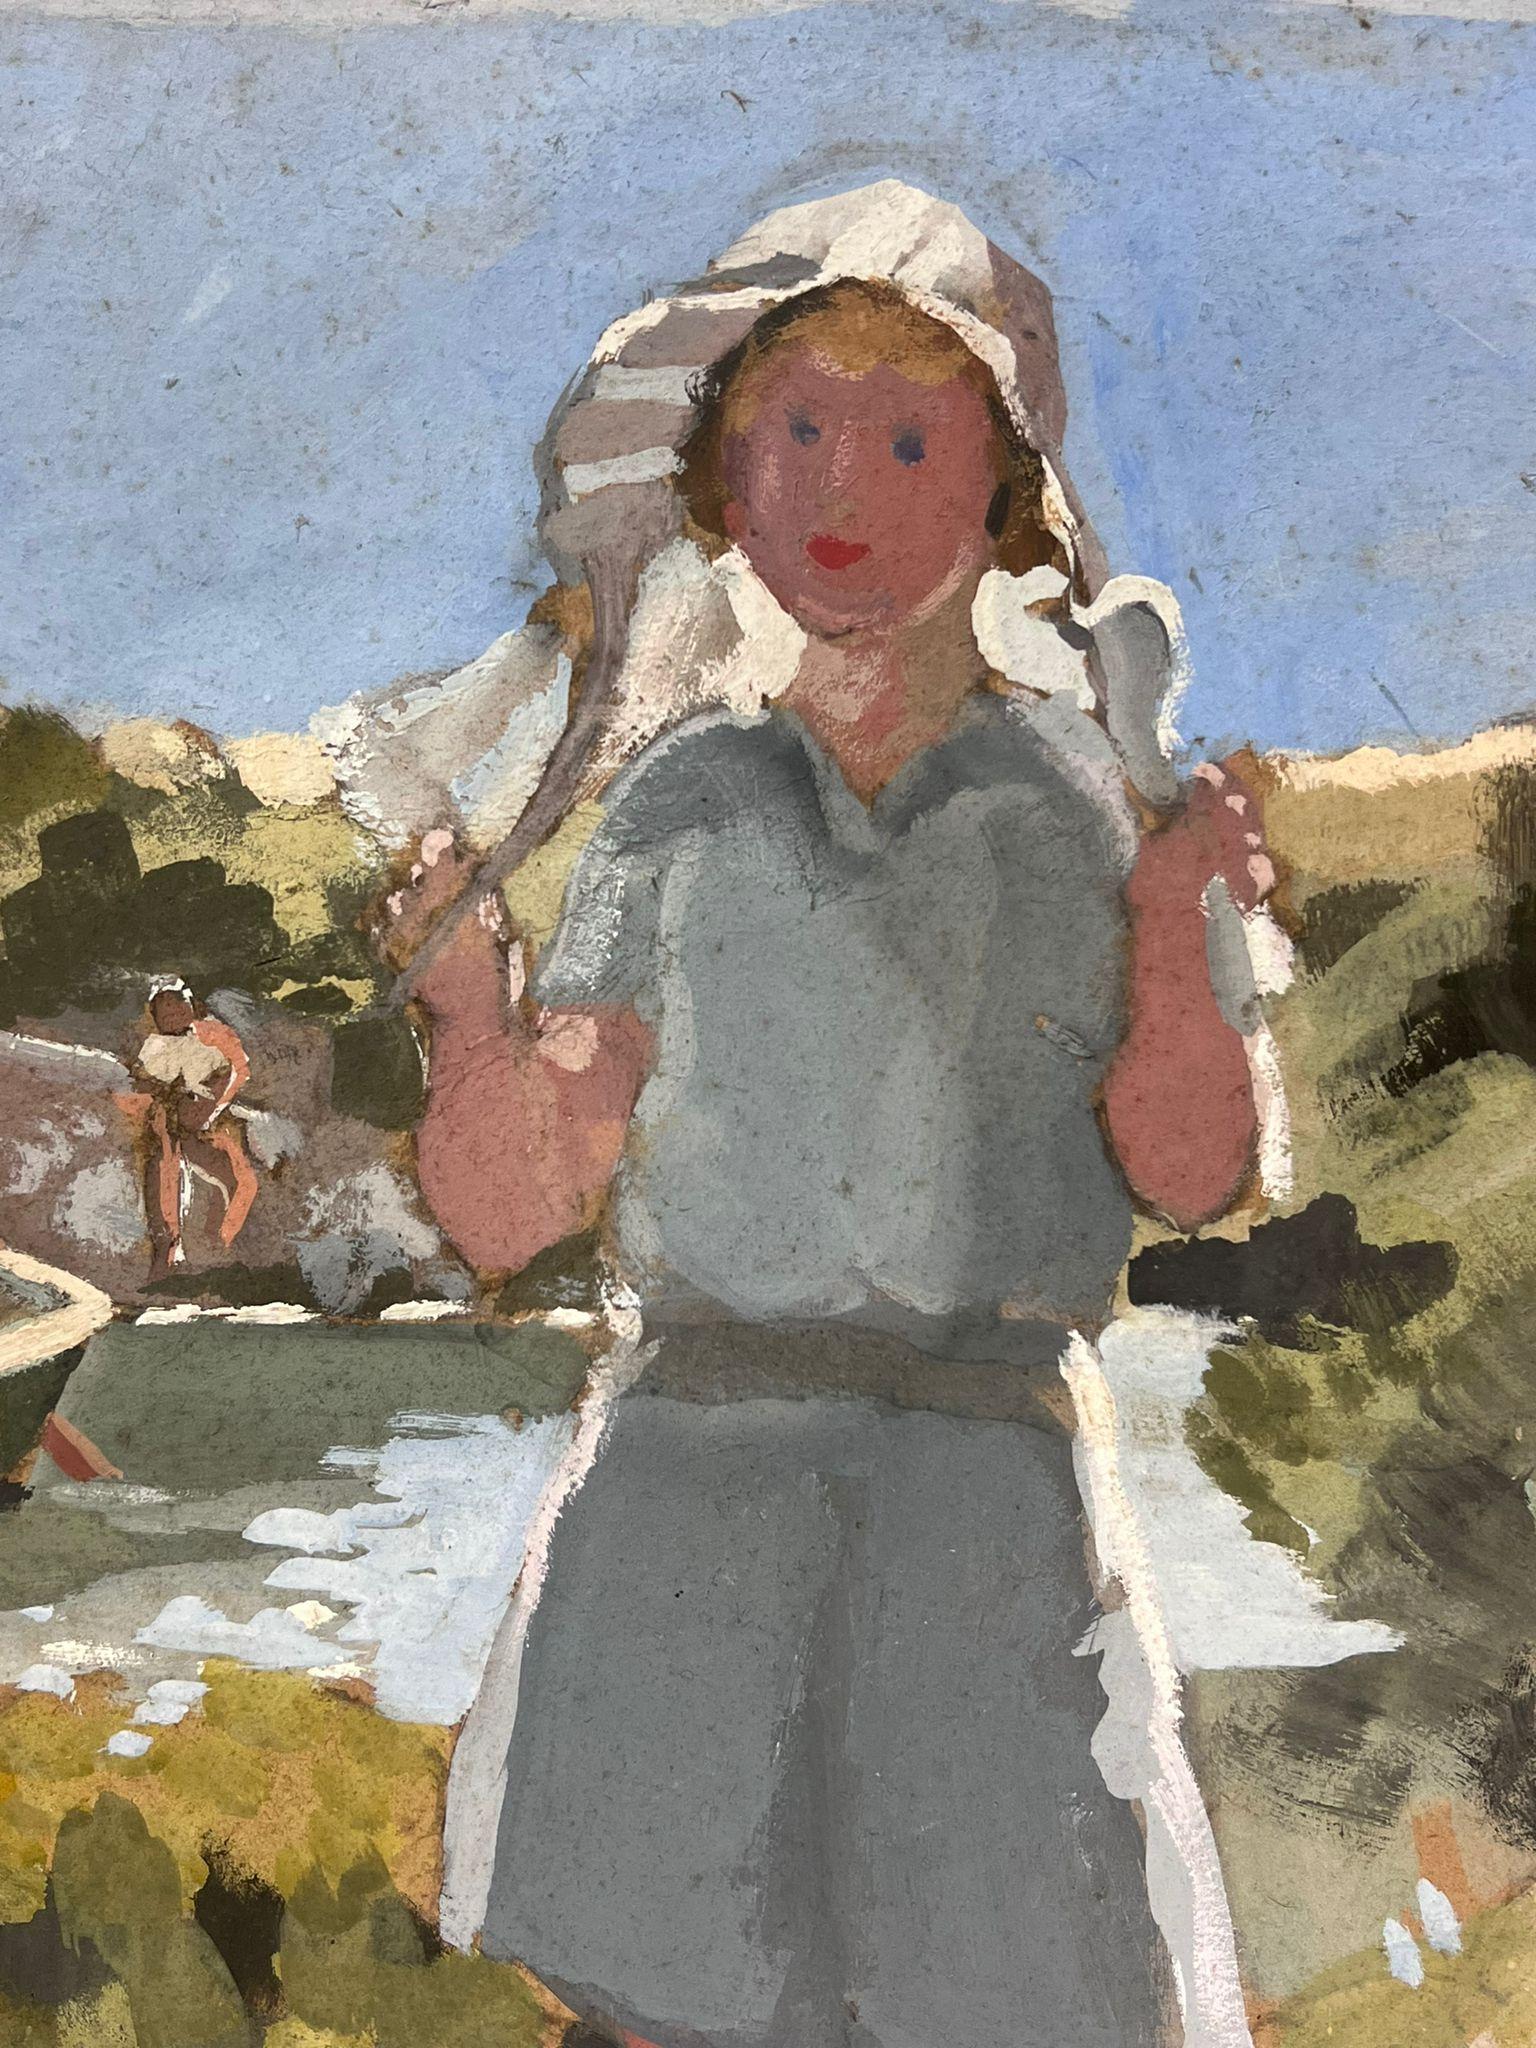 Der Küstenhafen
von Y. Blanchon, französischer Impressionist der 1930er Jahre 
Ölgemälde auf Karton, ungerahmt
Gemälde: 15 x 17,5 Zoll
Provenienz: aus einer großen Privatsammlung dieses Künstlers in Nordfrankreich
mit altem Ausstellungsetikett